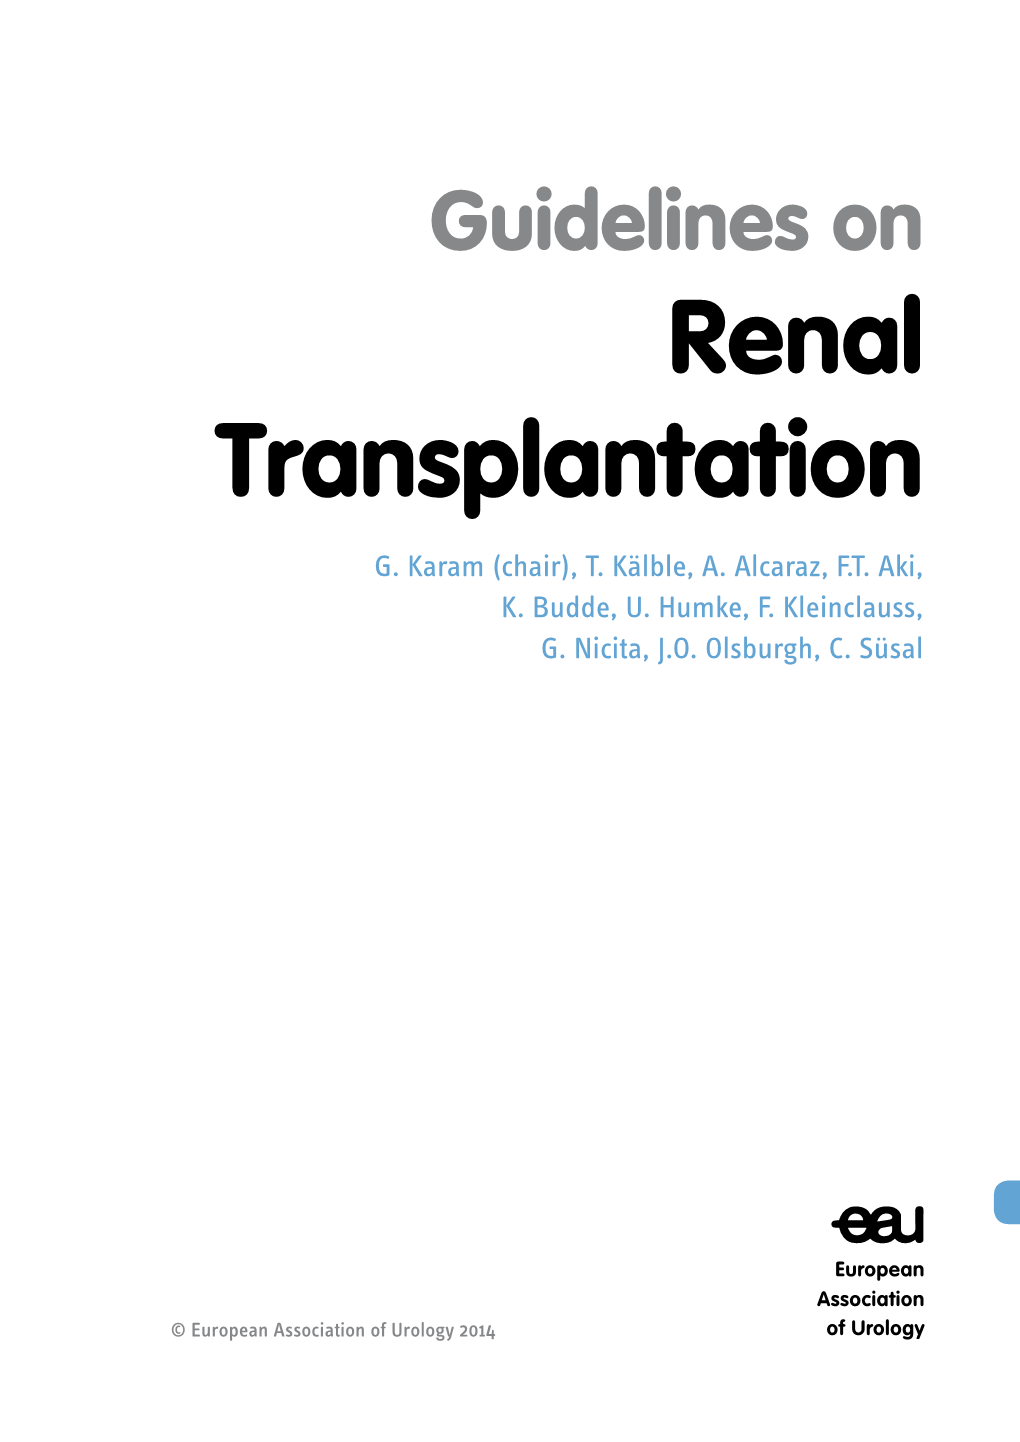 Guidelines on Renal Transplantation